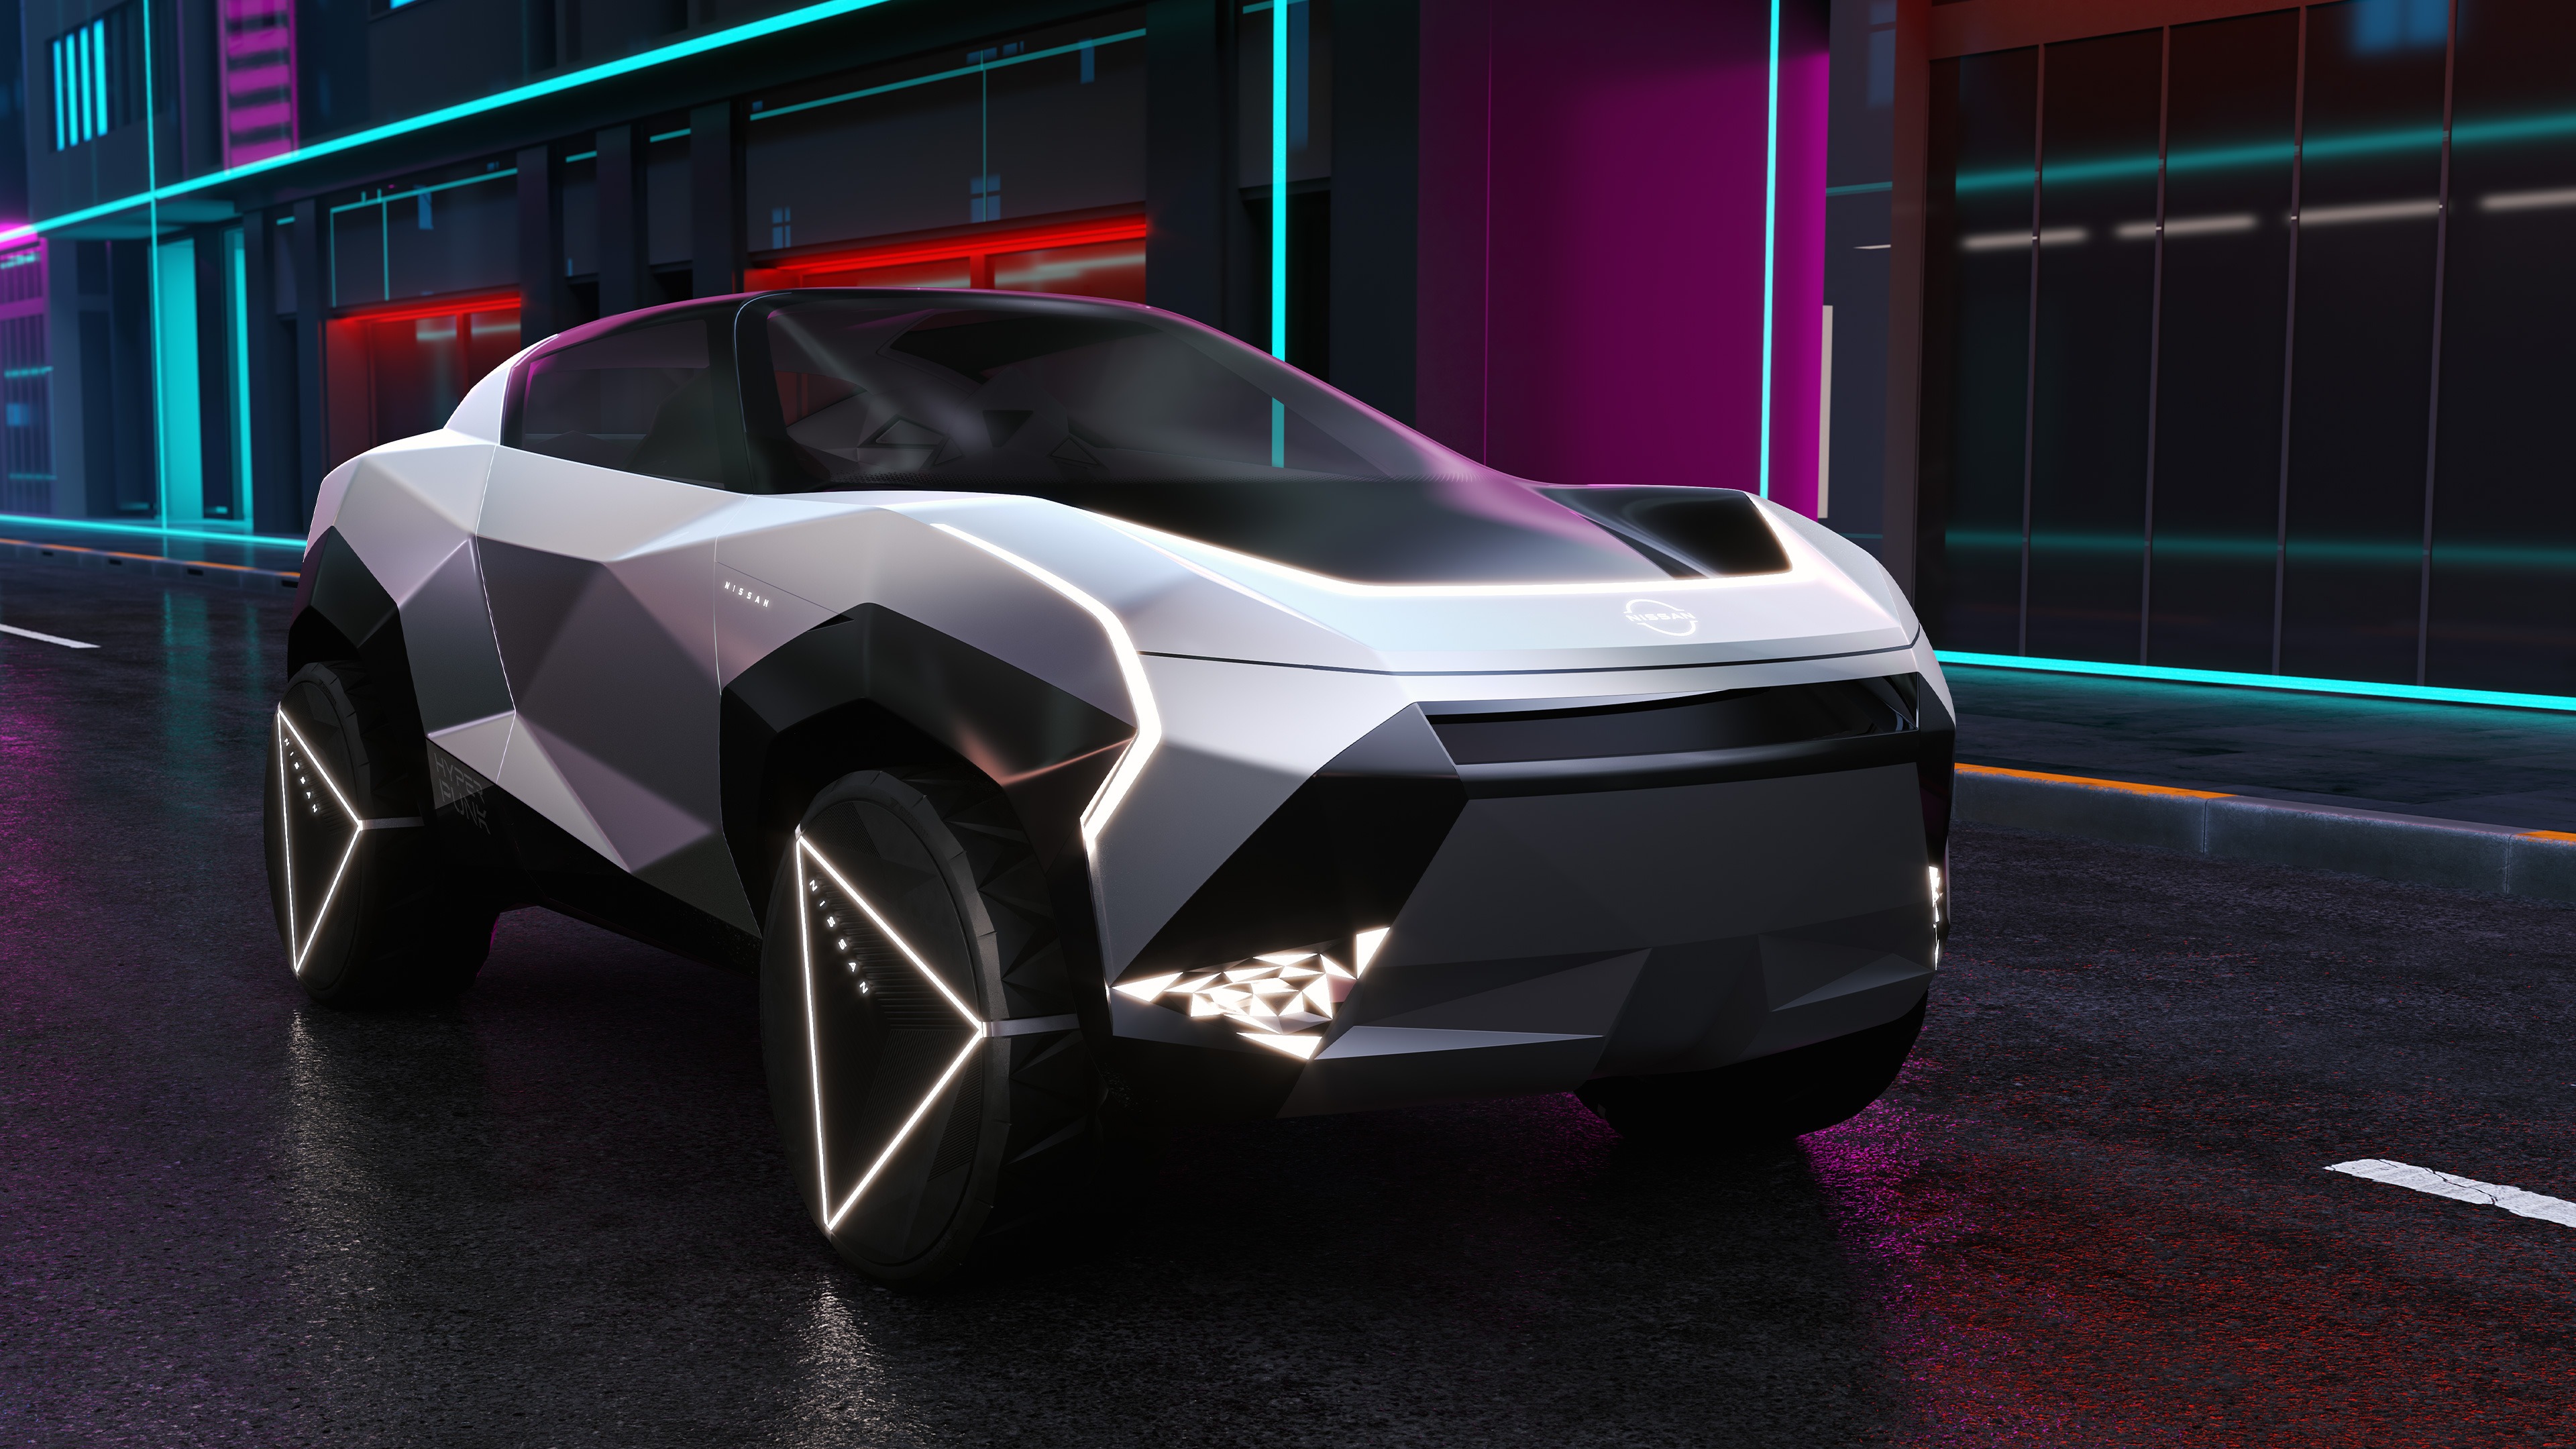 Nissan unveils the Nissan Hyper Punk concept car